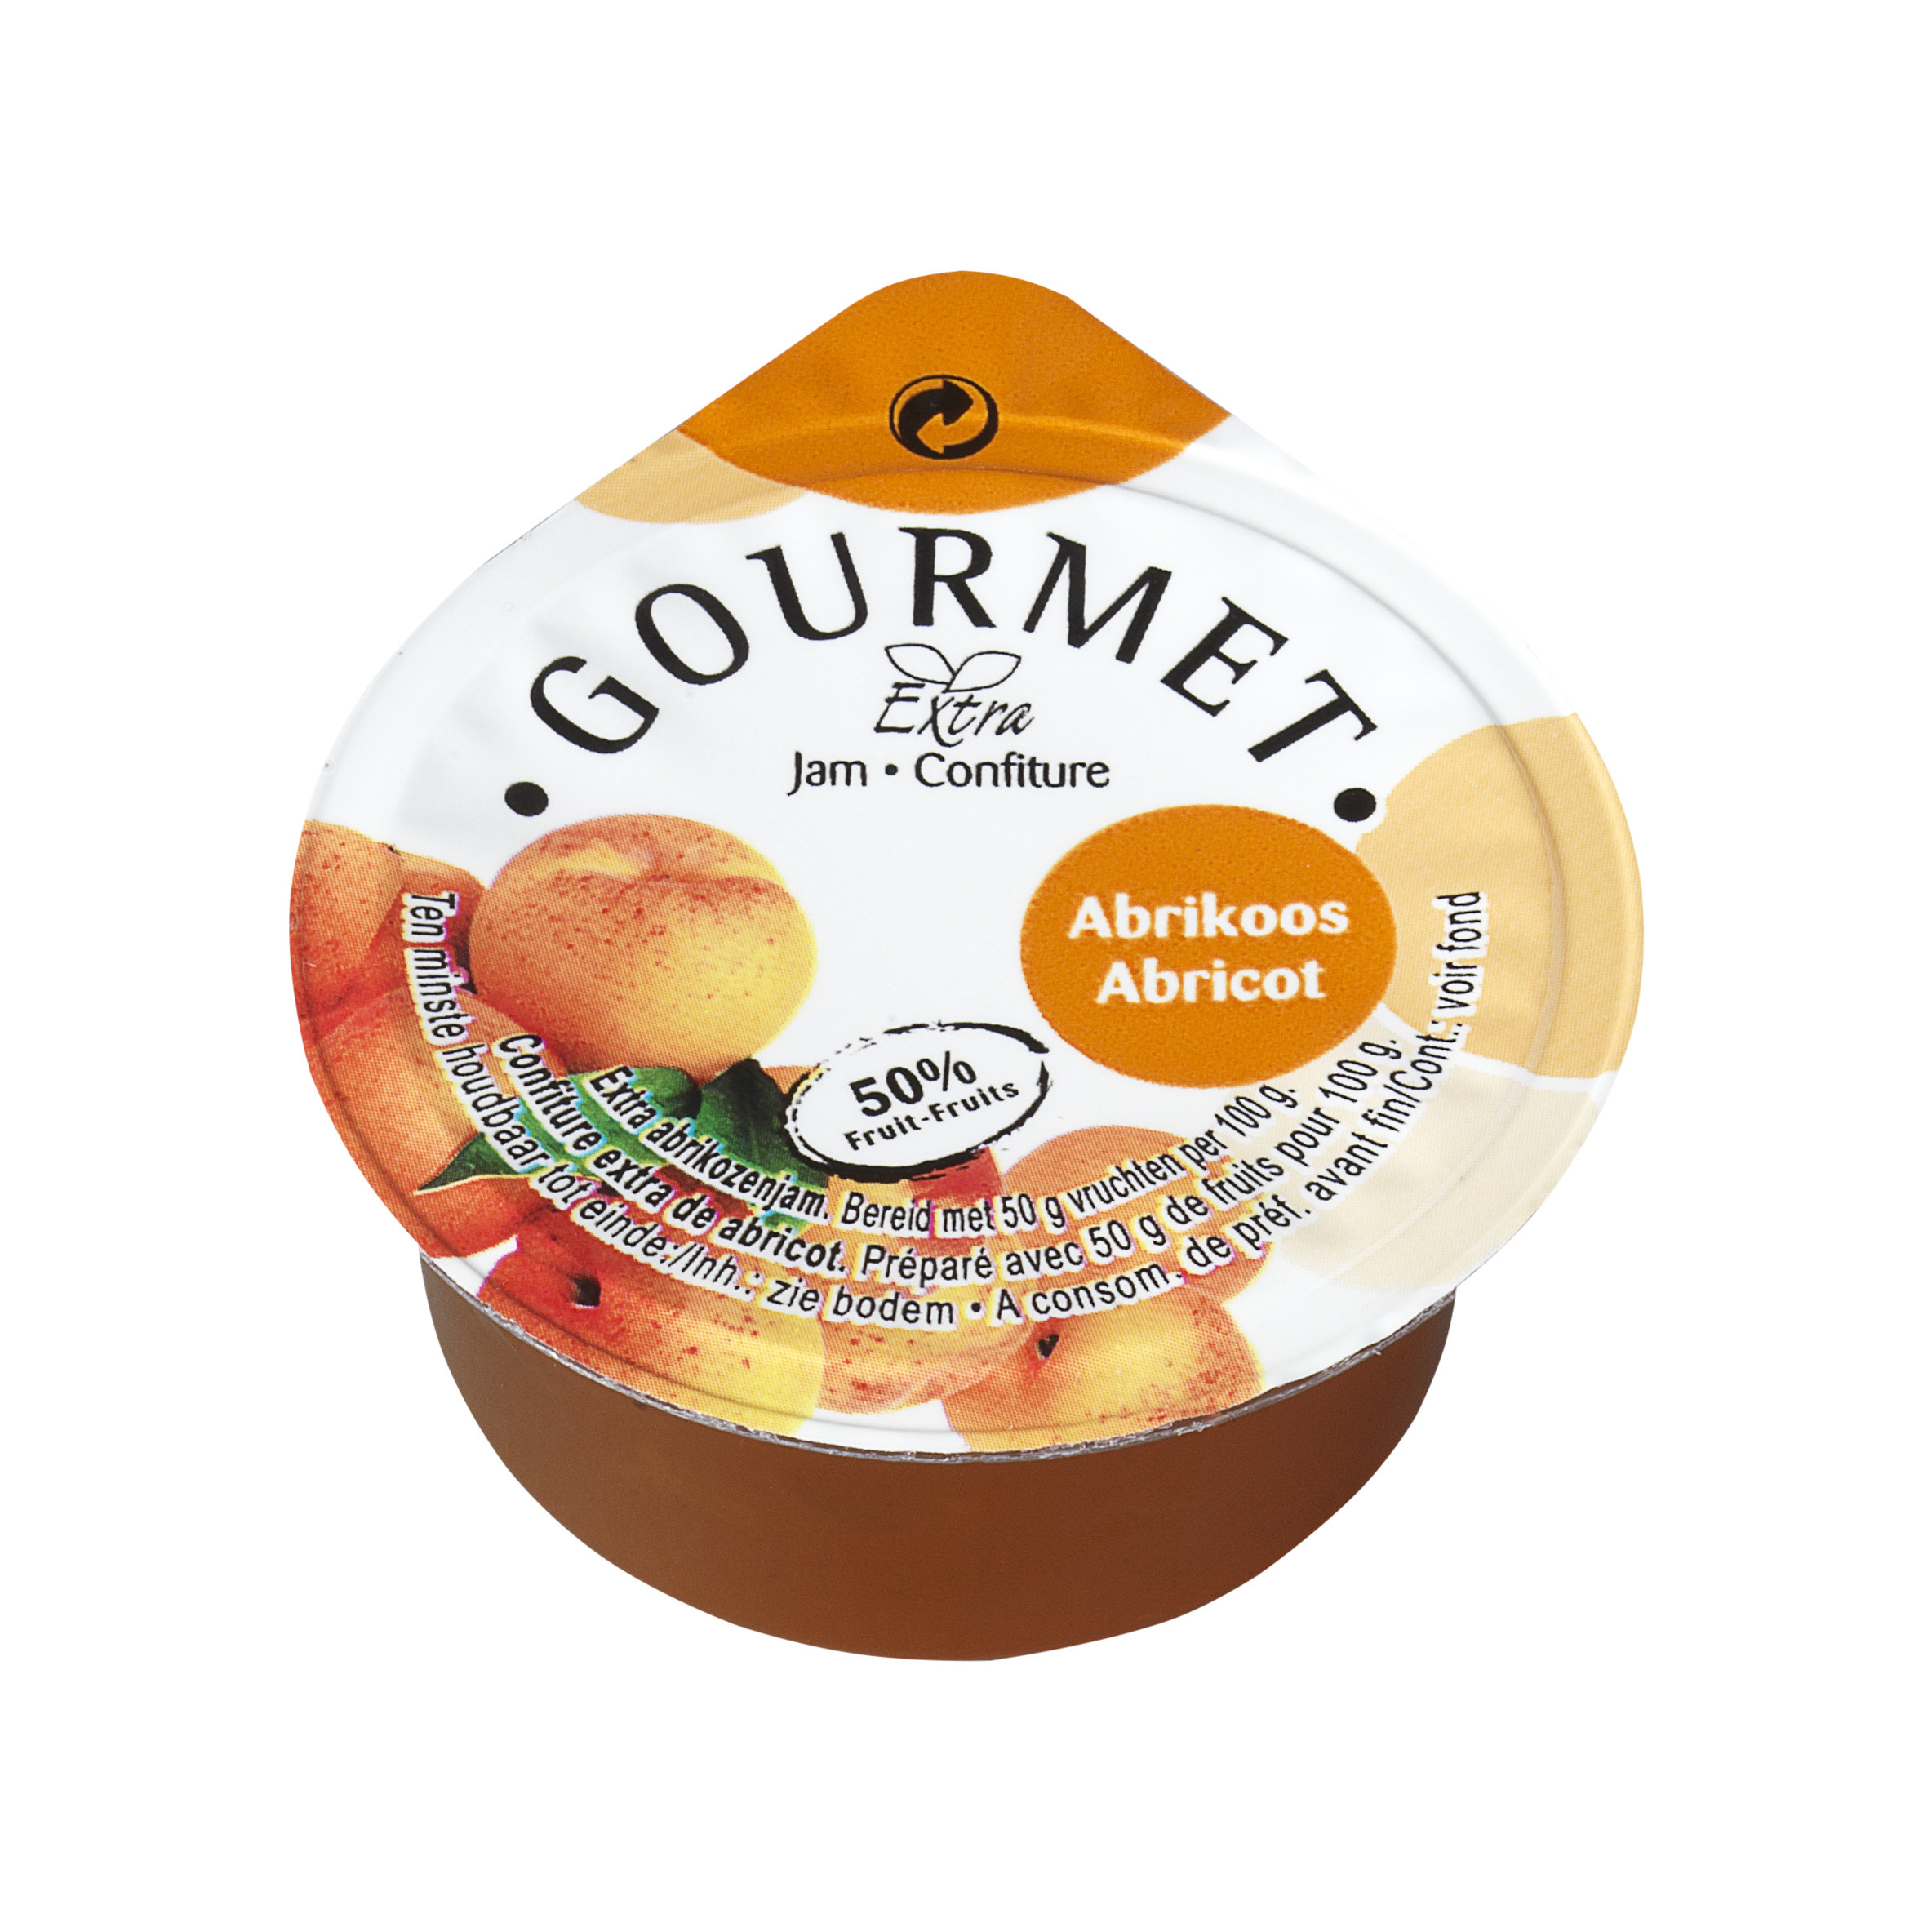 Automatisering bruiloft D.w.z Confituur Porties abrikozen 50% fruit in cups 100x25gr Gourmet Online Kopen  - Nevejan